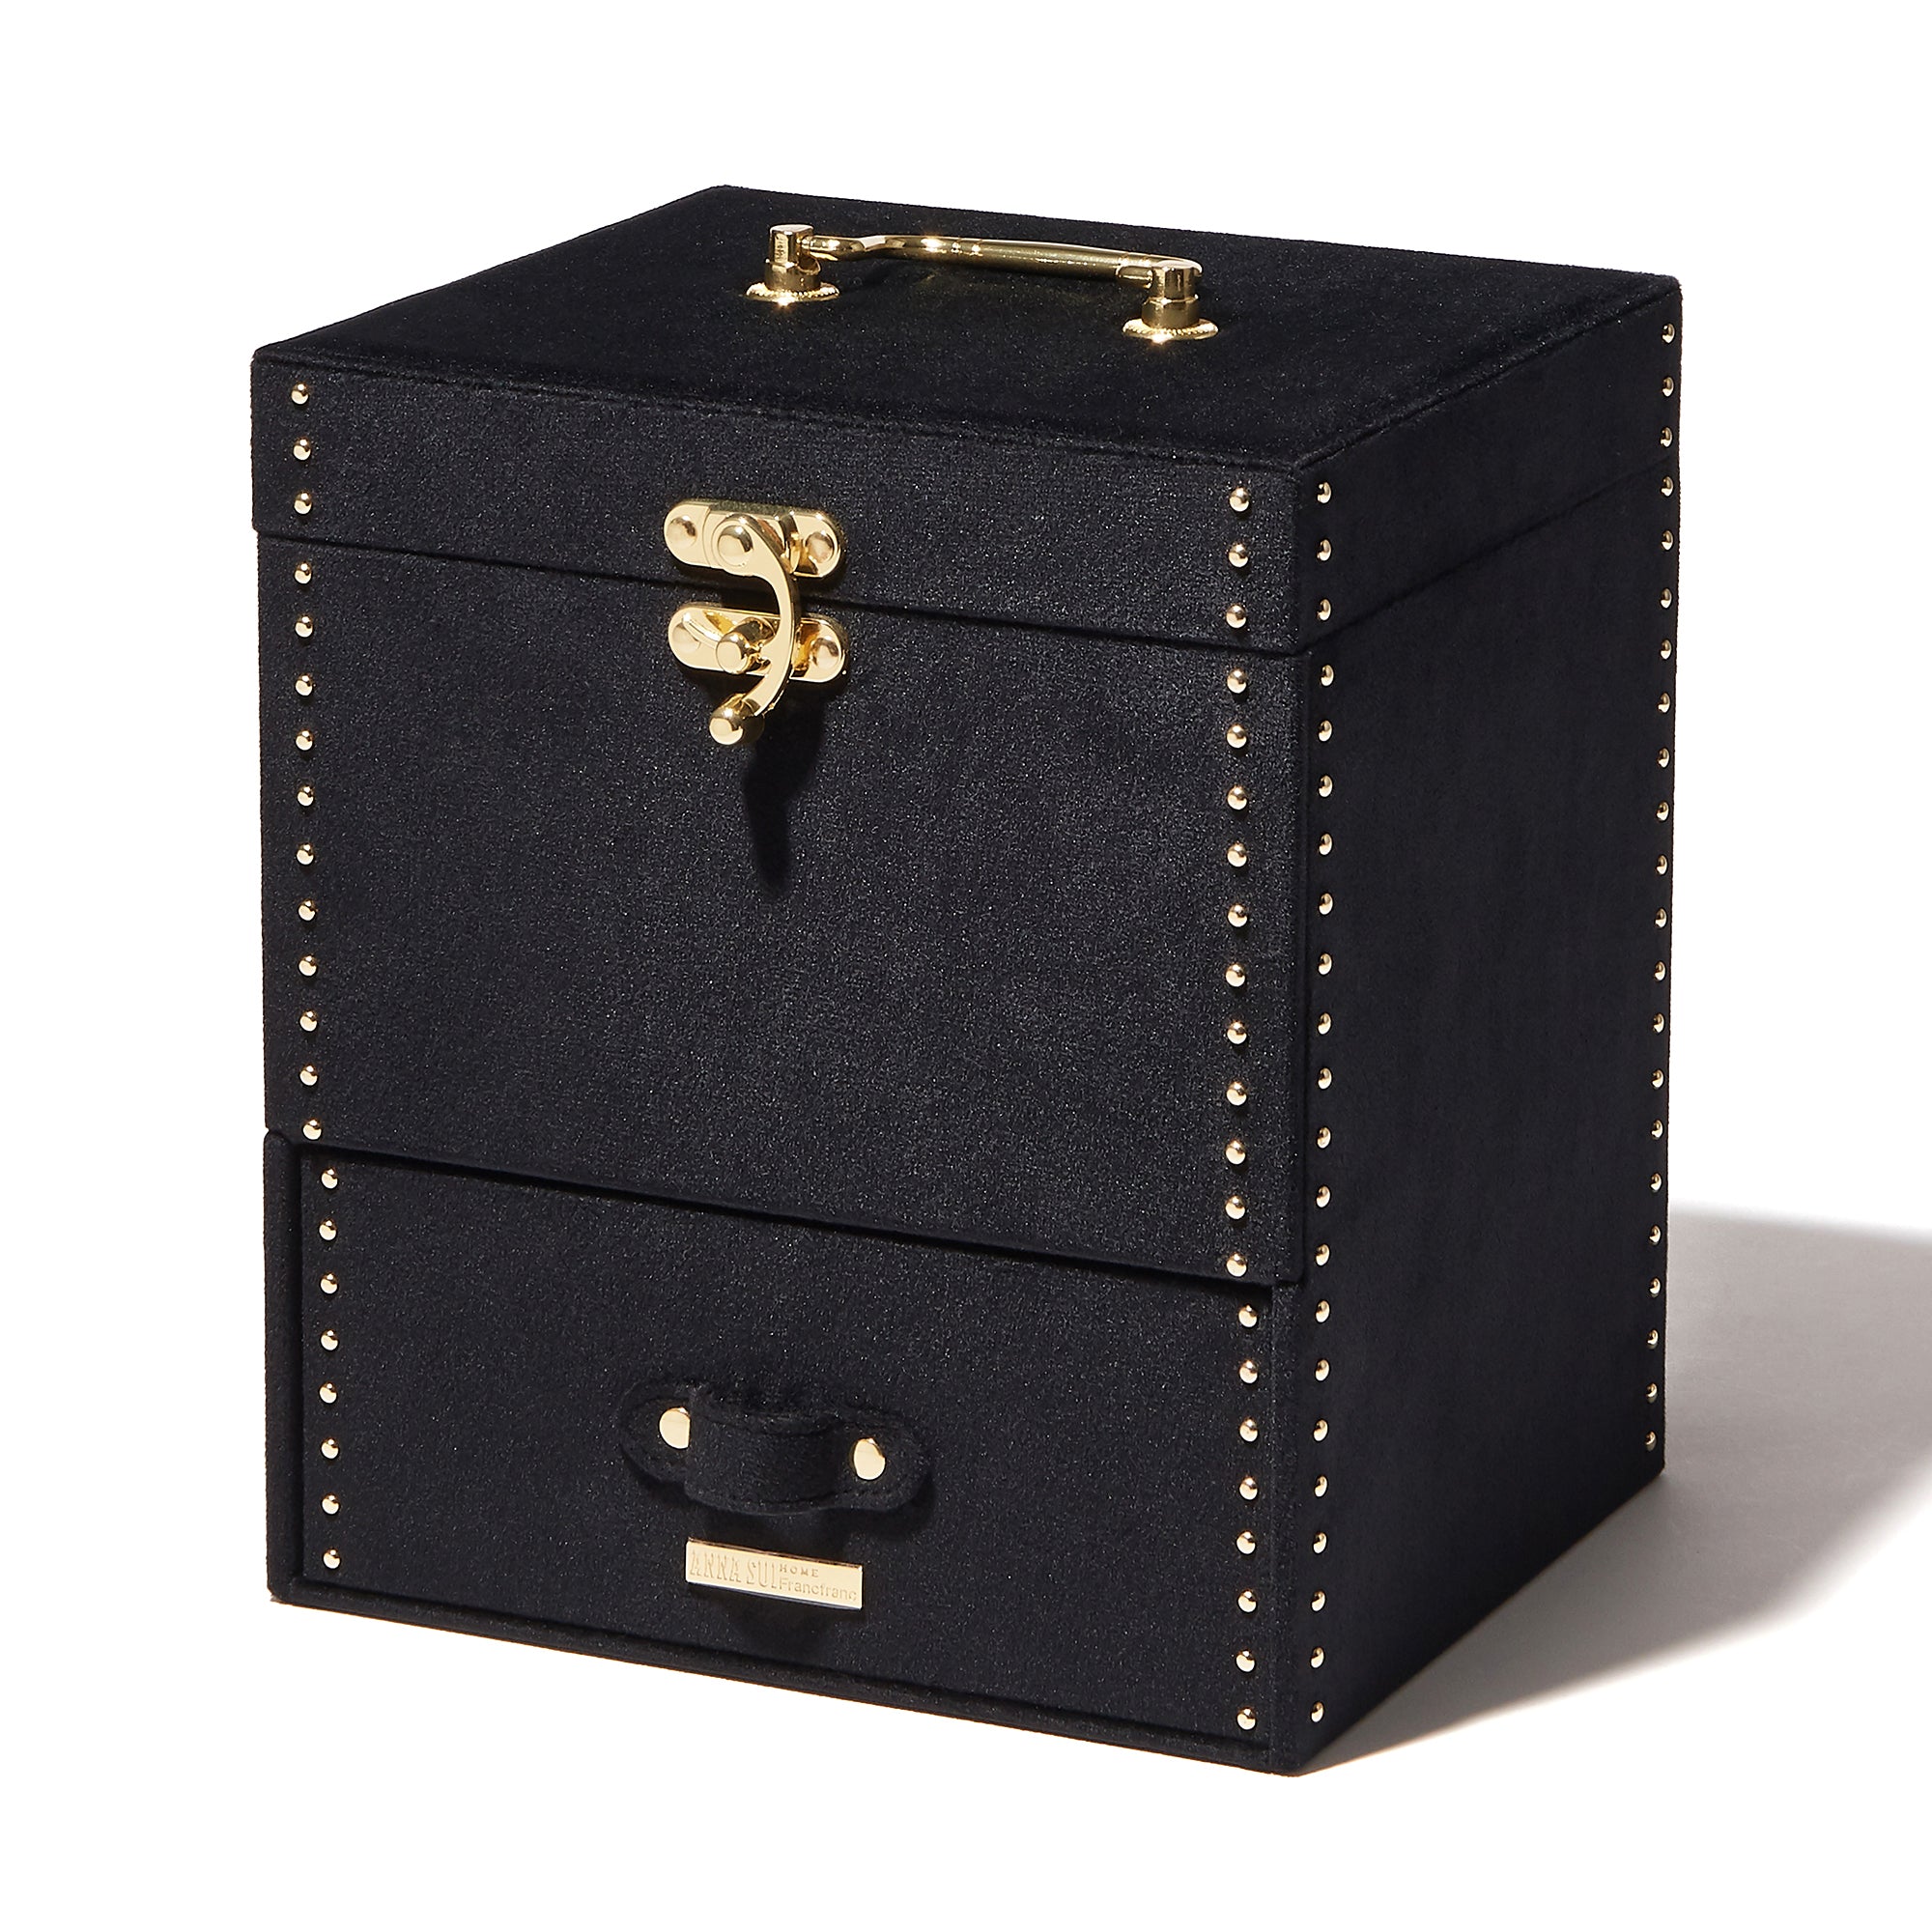 Anna Sui マルチボックス ブラック Francfranc フランフラン 公式通販 家具 インテリア 生活雑貨